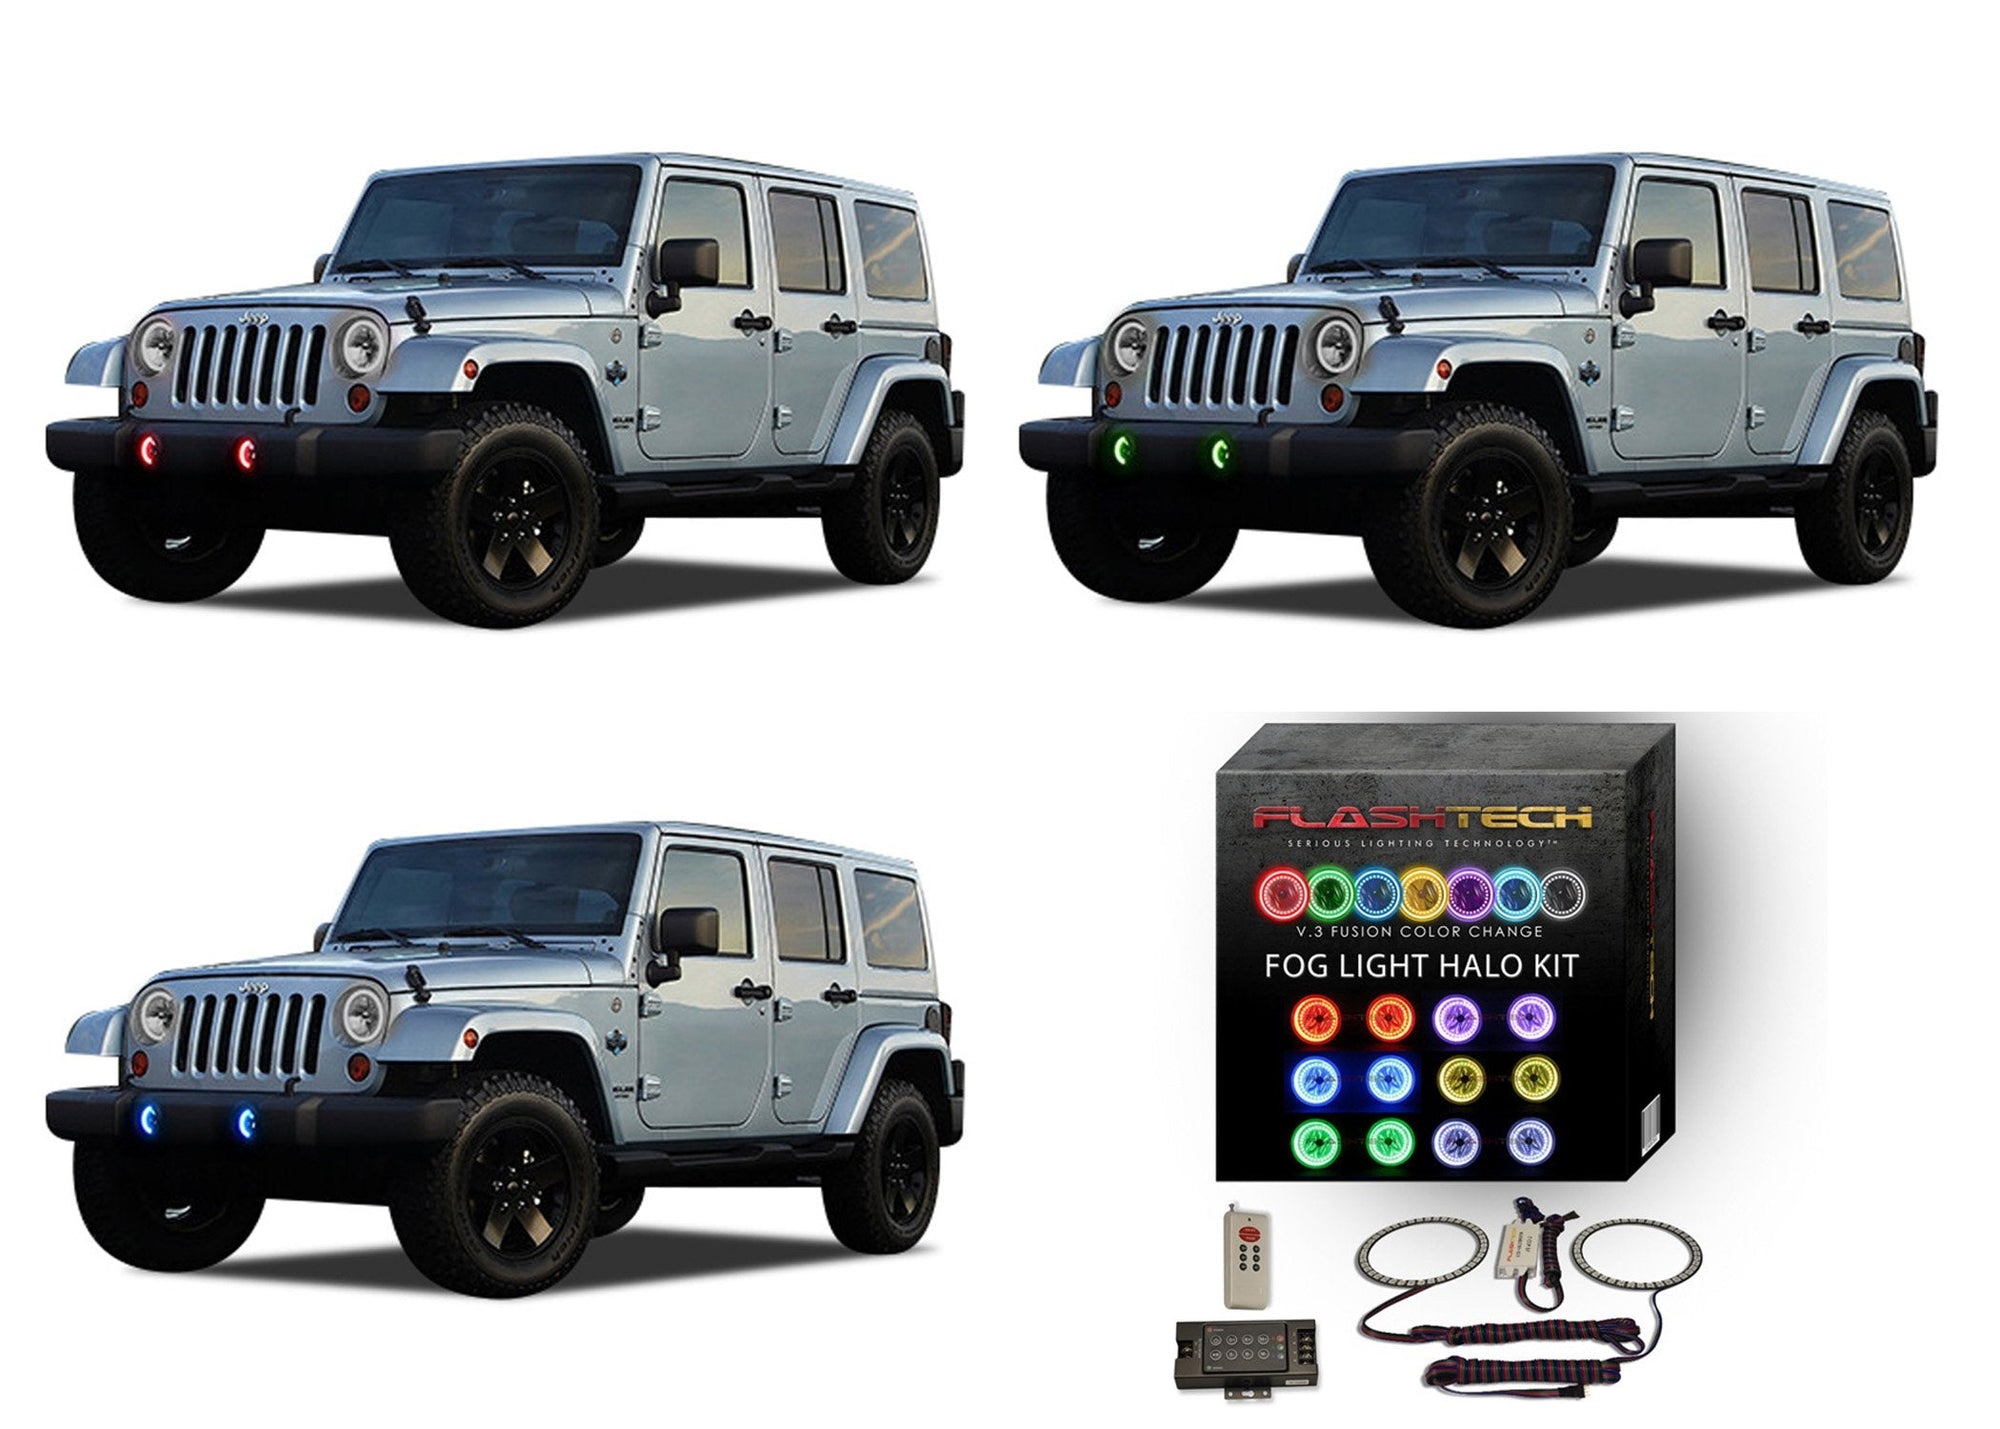 Jeep-Wrangler-2007, 2008, 2009, 2010, 2011, 2012, 2013, 2014, 2015, 2016, 2017-LED-Halo-Fog Lights-RGB-RF Remote-JE-WR9715-V3FRF